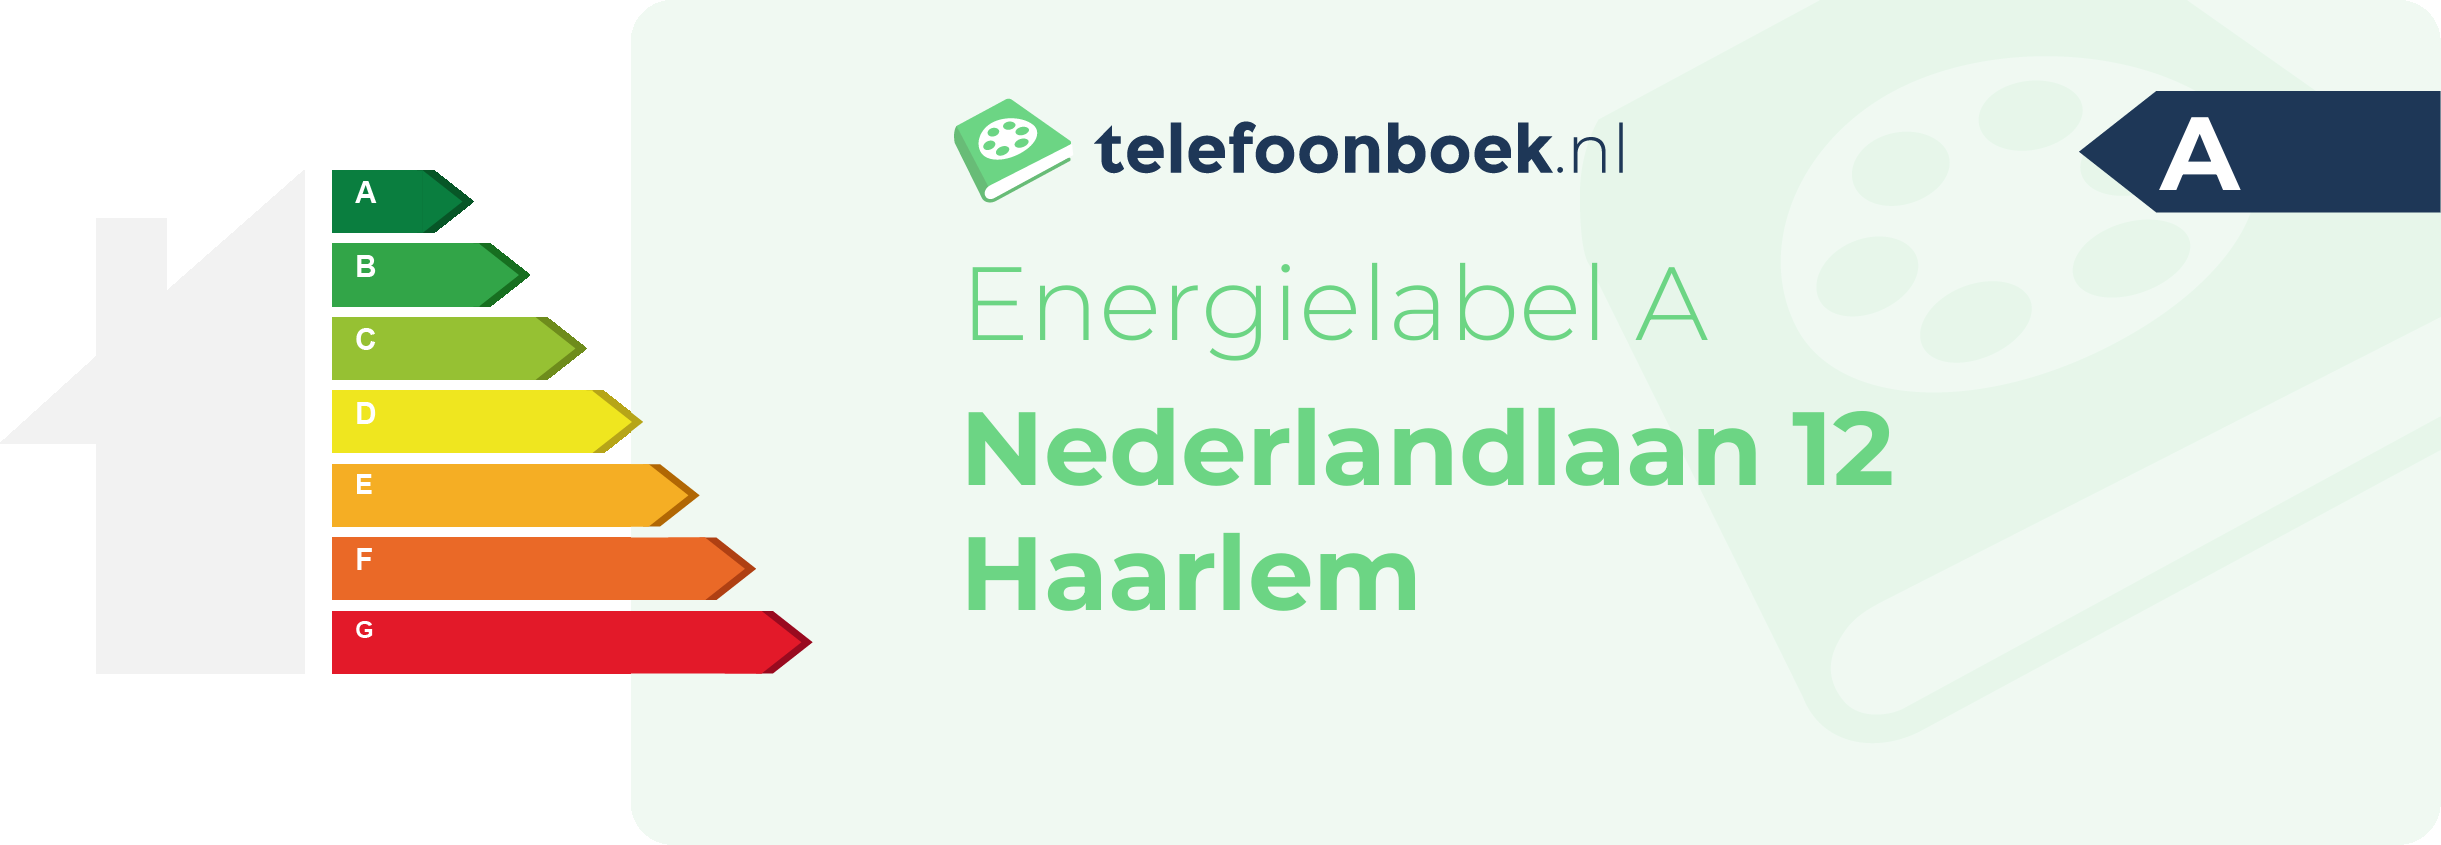 Energielabel Nederlandlaan 12 Haarlem